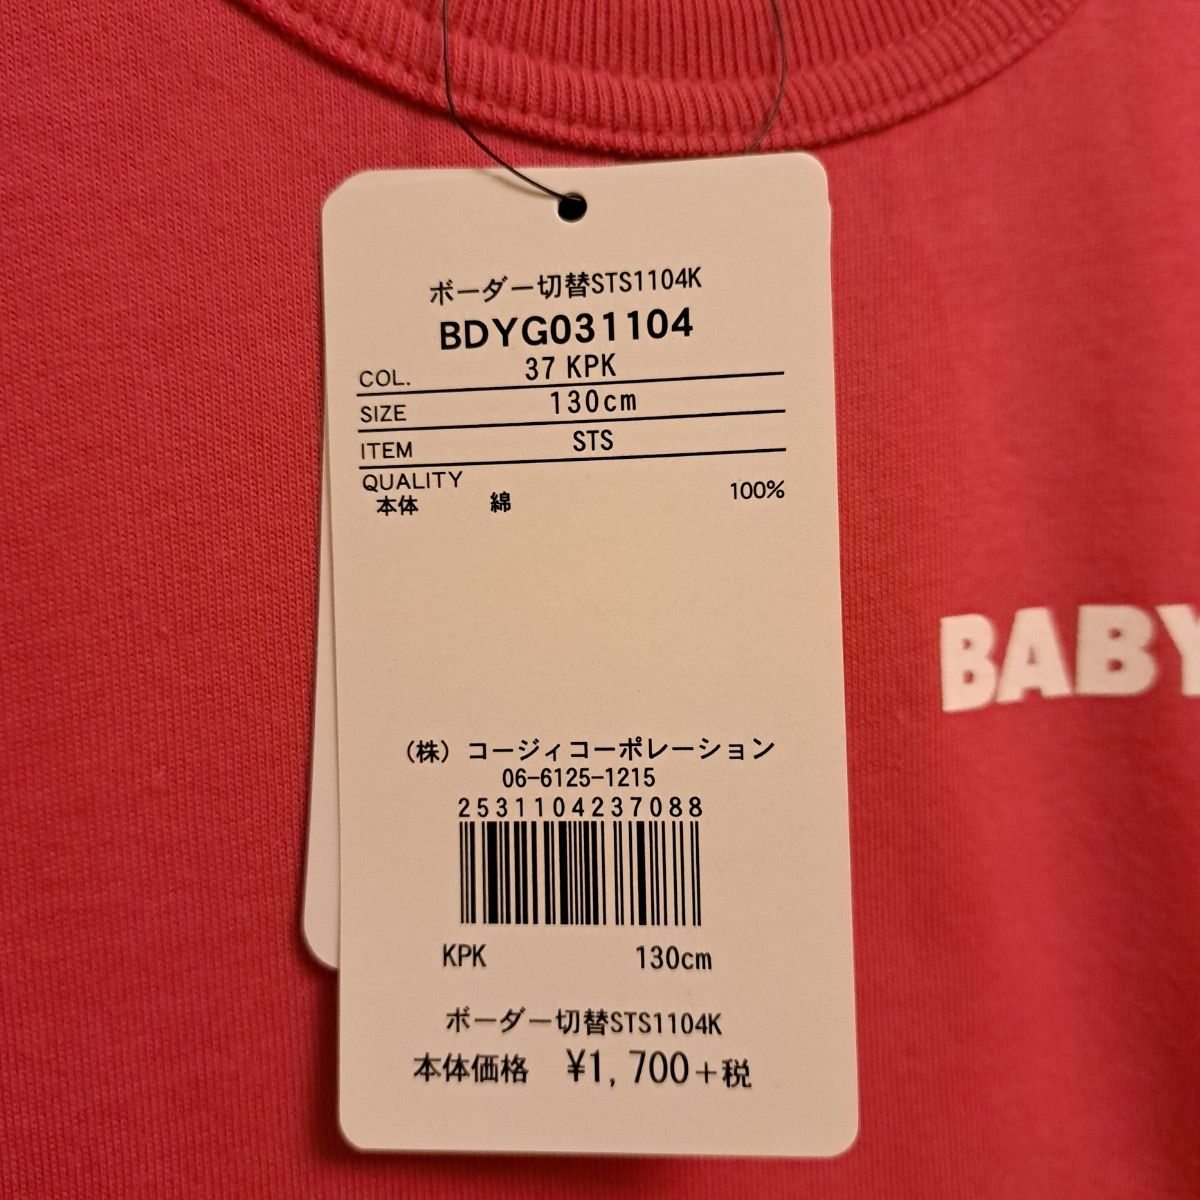 ベビードール　キッズ　半袖Tシャツ　BABYDOLL　 Tシャツ　130　タグ付未使用　ピンク